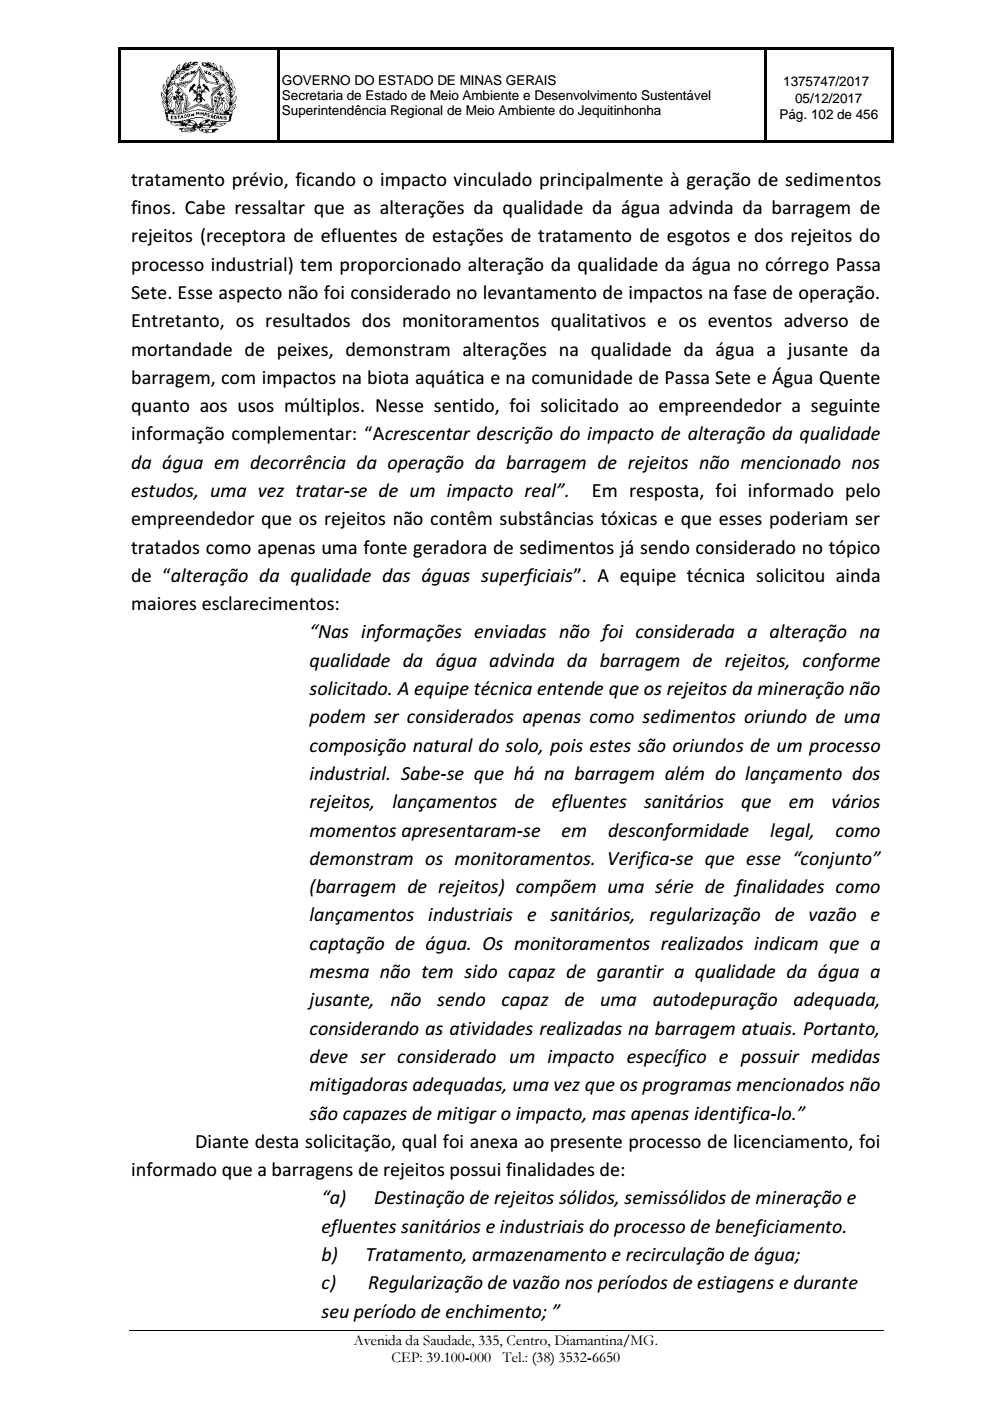 Page 102 from Parecer único da Secretaria de estado de Meio Ambiente e Desenvolvimento Sustentável (SEMAD)